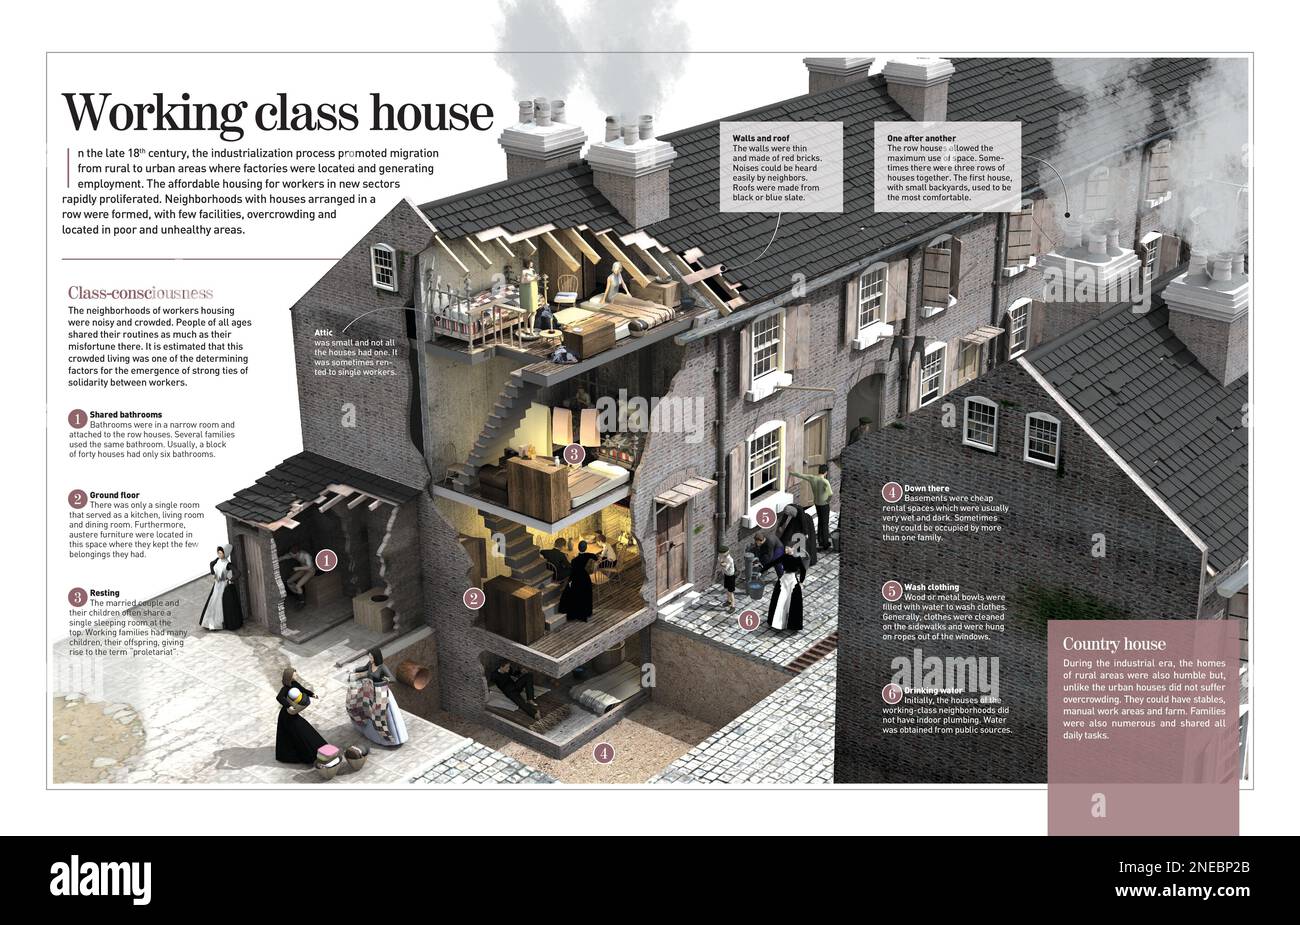 Infografía sobre las casas superpobladas donde vivía la clase trabajadora al comienzo de la Revolución Industrial (siglos 18th a 19th). [Adobe InDesign (.indd); 4960x8503]. Foto de stock